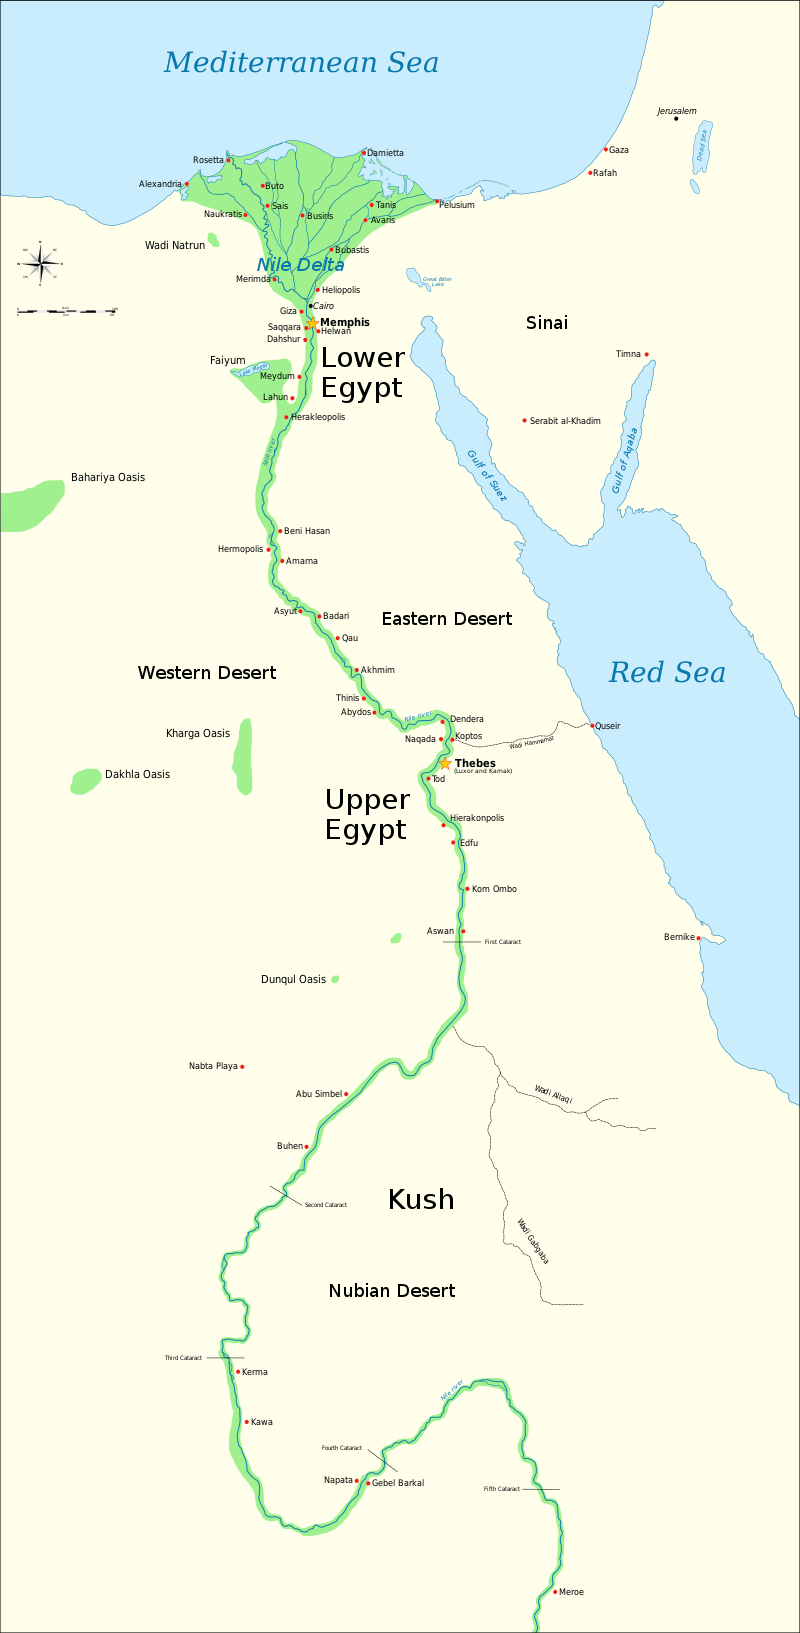 Peta Kush dan Mesir Kuno, menunjukkan Sungai Nil hingga katarak kelima, dan kota-kota besar dan situs dari periode Dinasti Mesir kuno (3150 SM hingga 30 SM) (peta: Jeff Dahl, CC Y-SA 4.0)